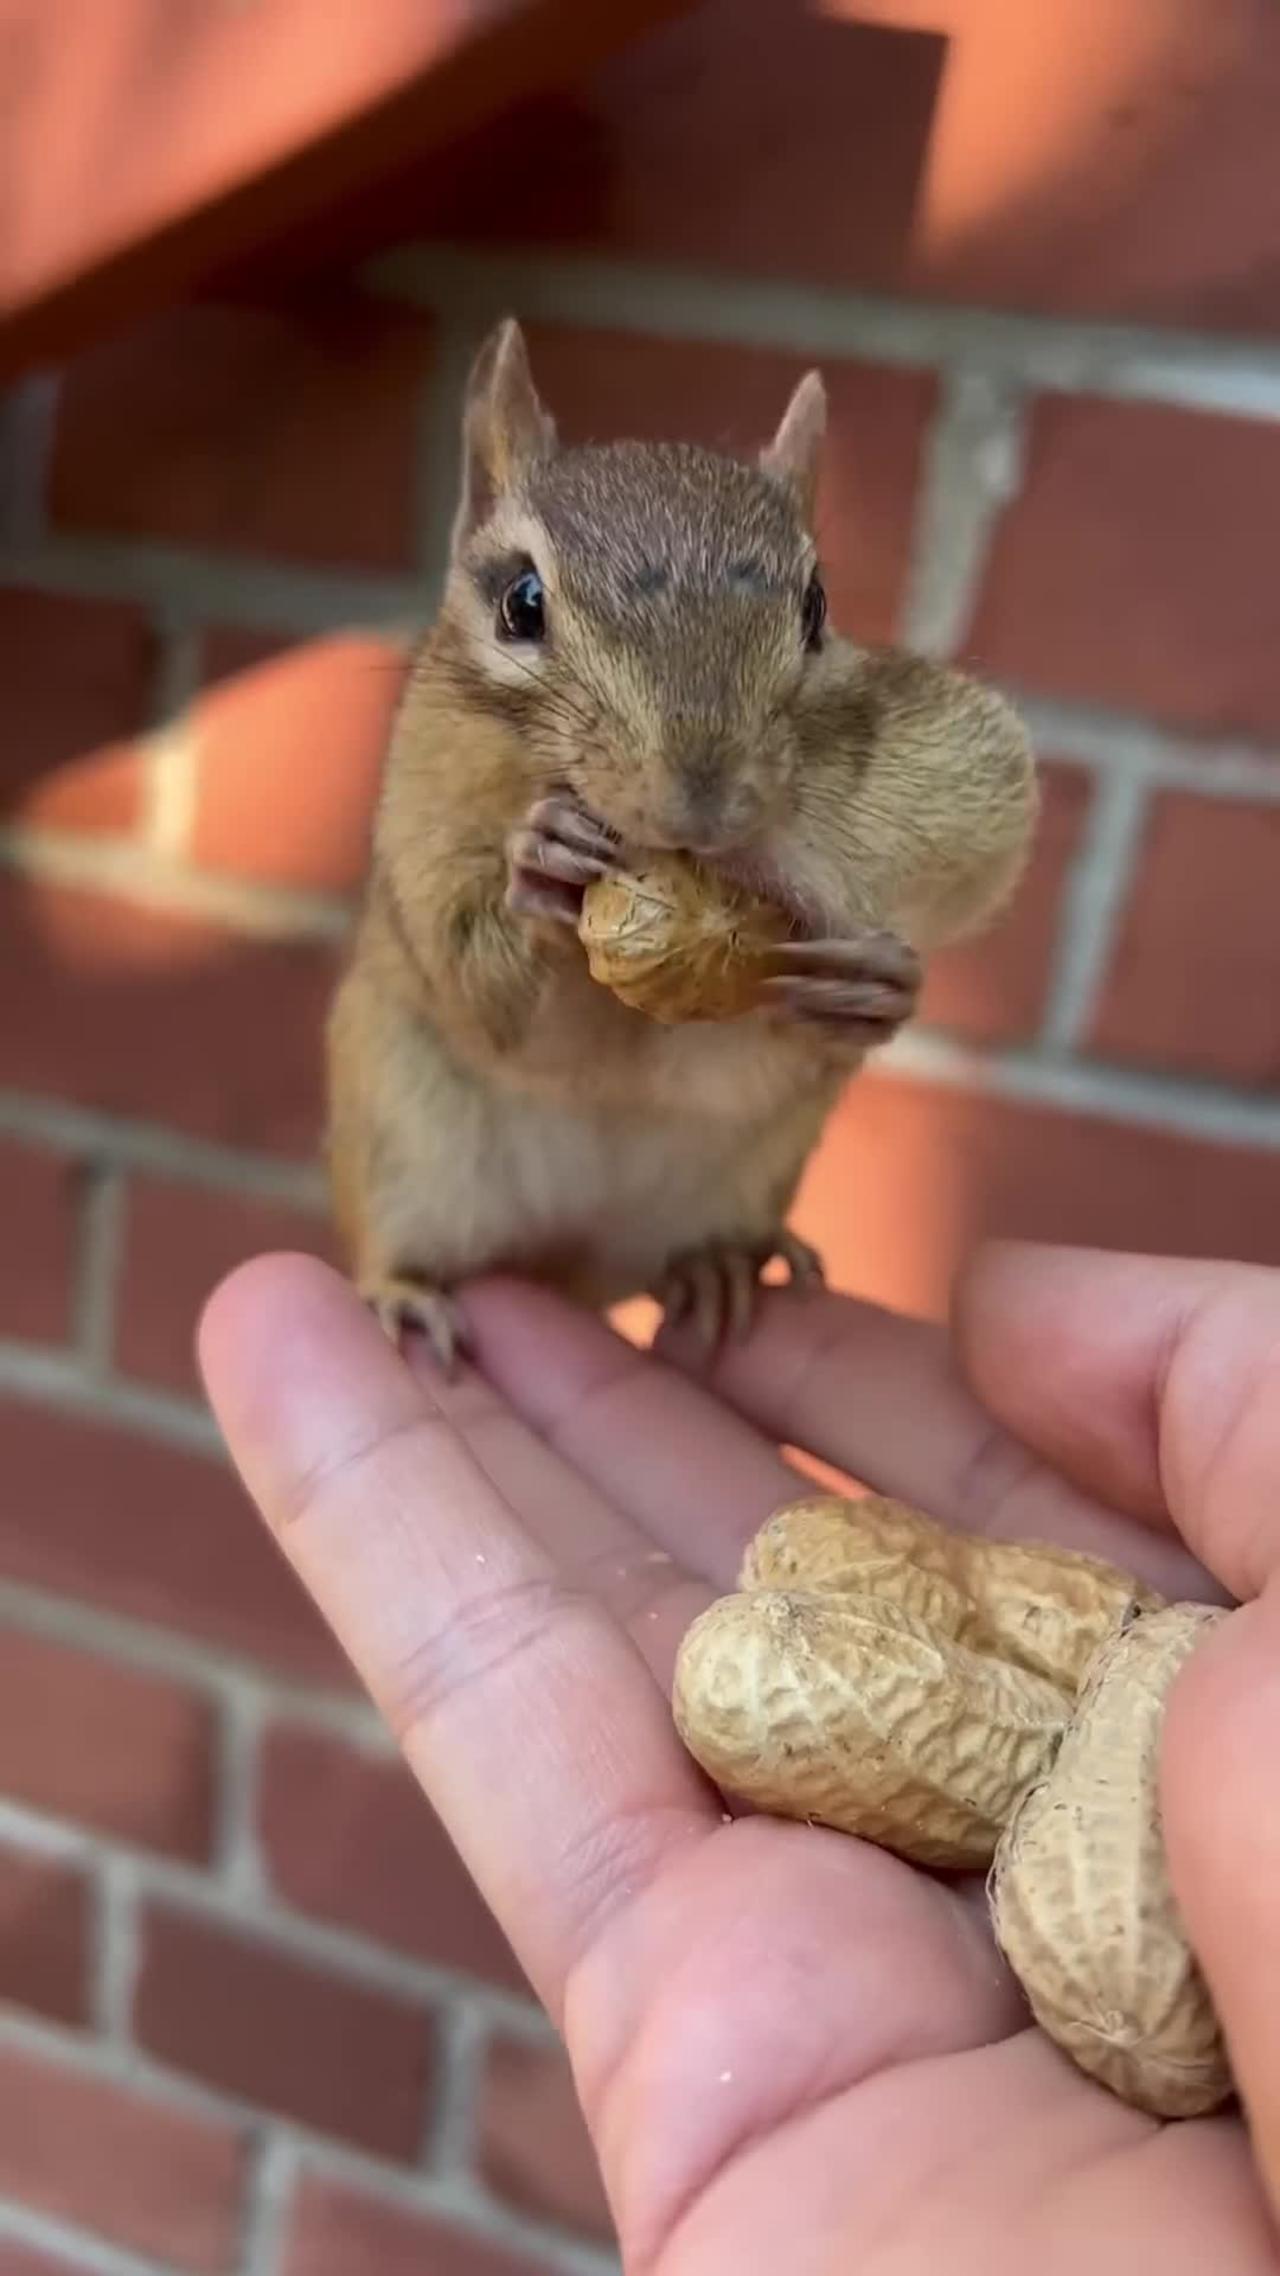 Little squirrel eating peanut 🥜 😋 😍